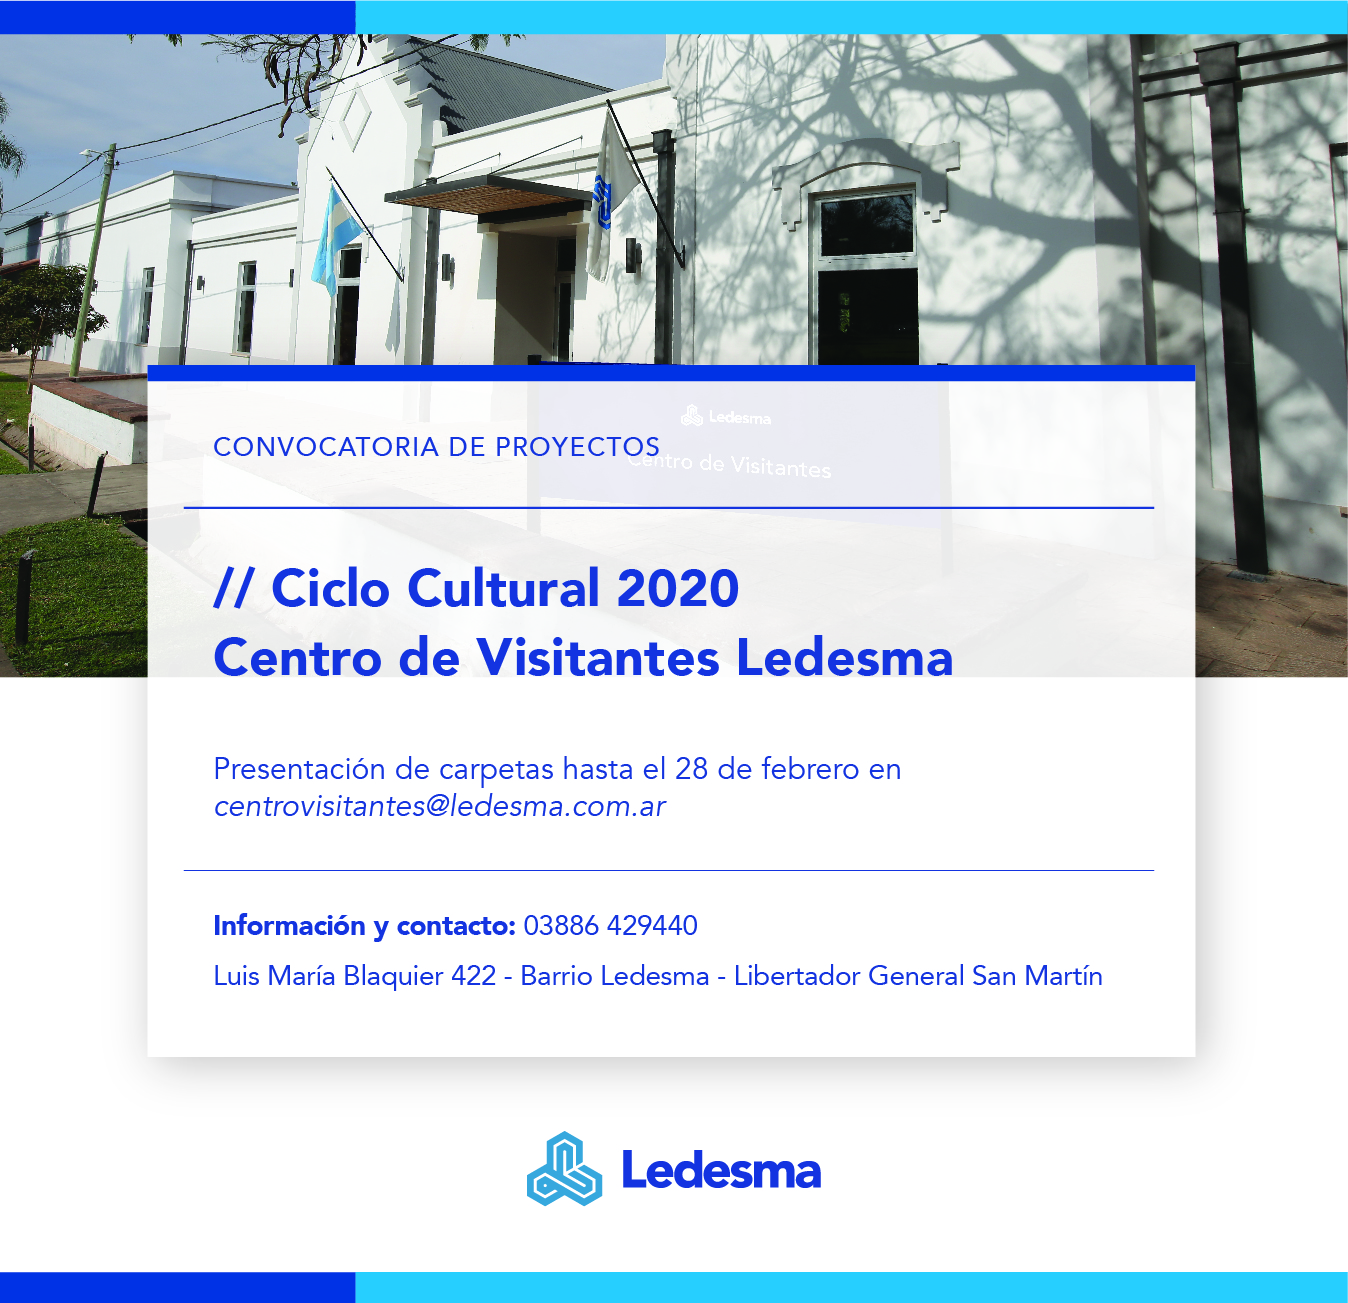  El Centro de Visitantes Ledesma prepara agenda cultural